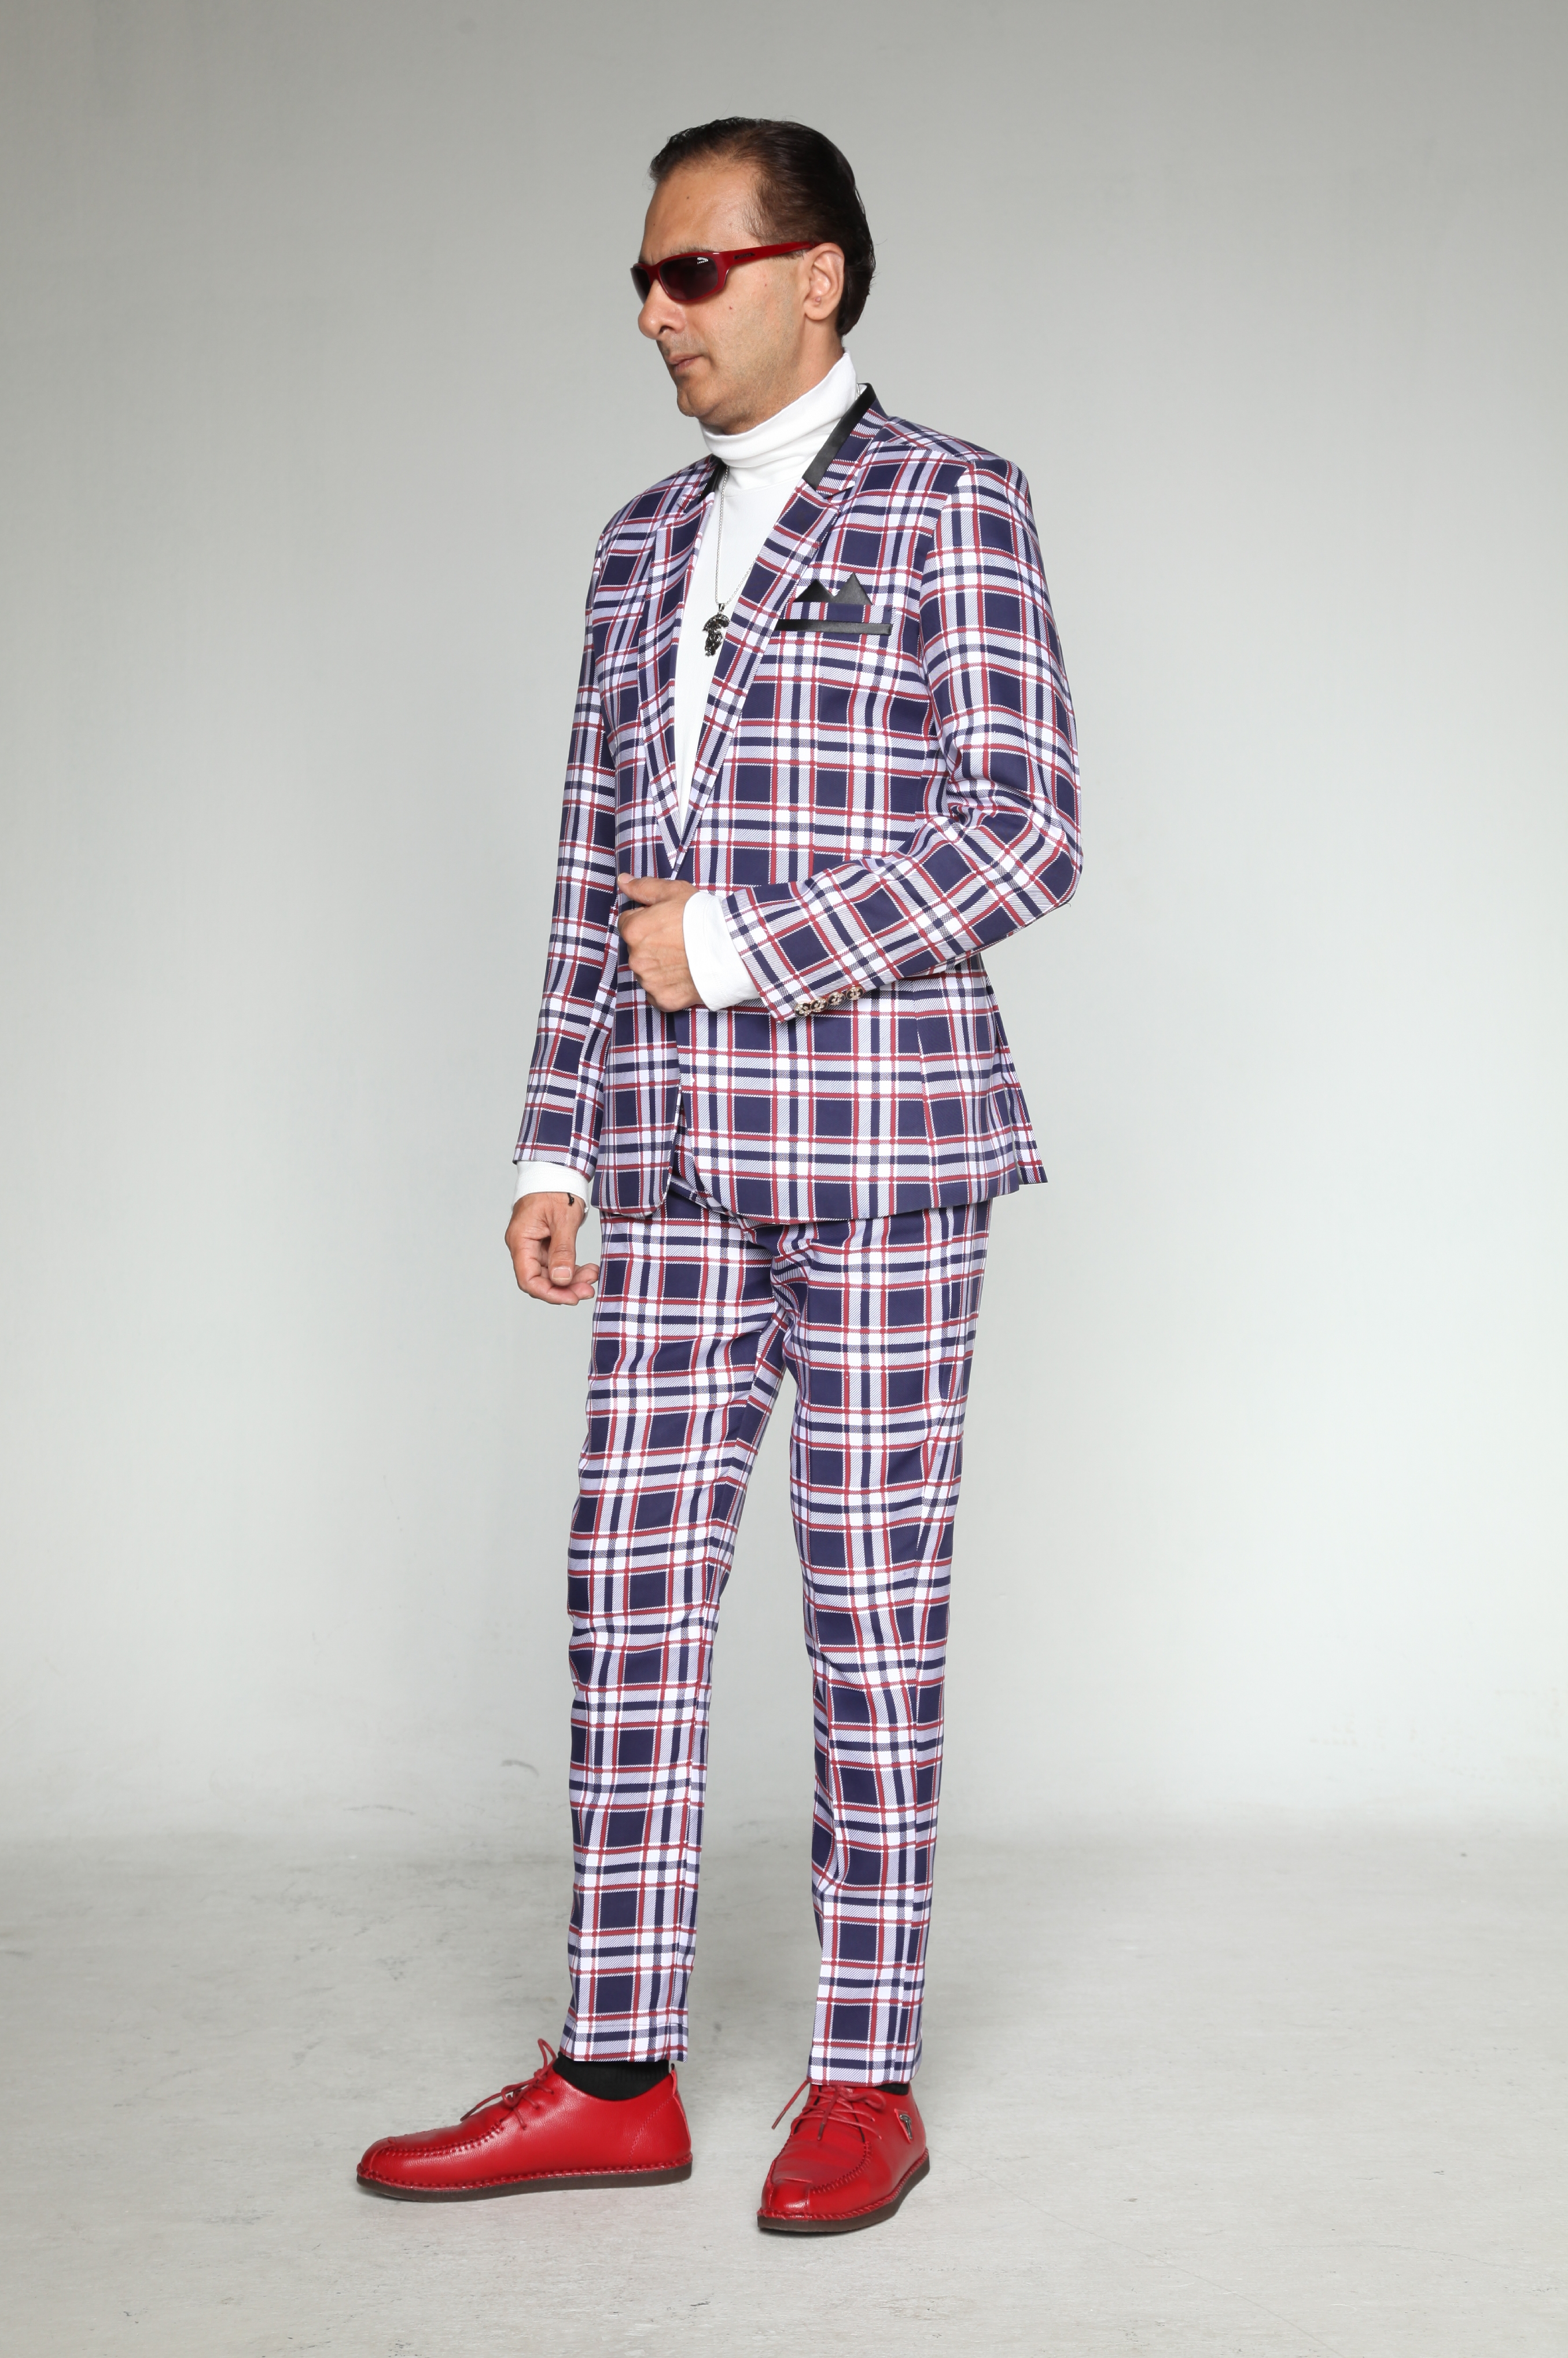 0453A-tailor_tailors_bespoke_tailoring_tuxedo_tux_wedding_black_tie_suit_suits_singapore_business